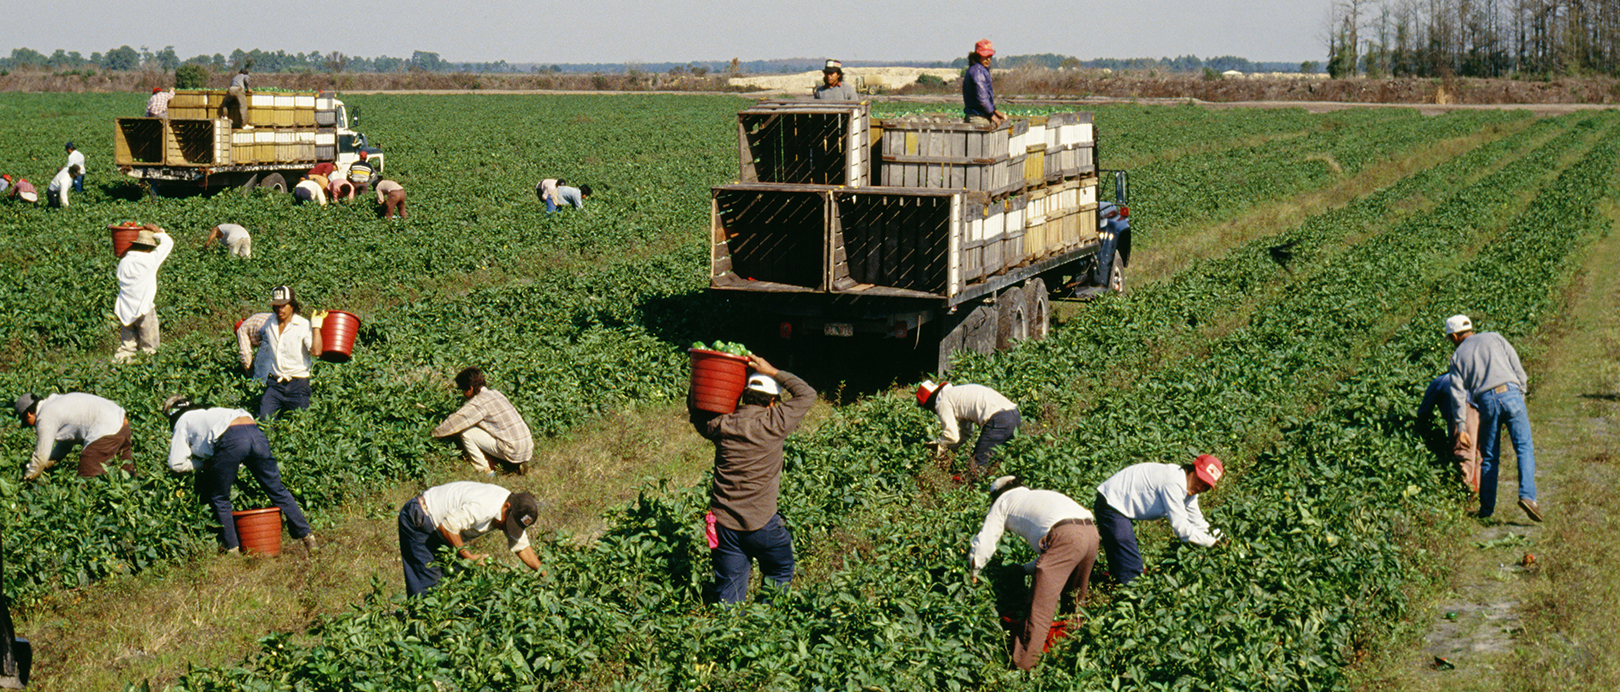 Un grupo de personas en un campo cosechando productos con camionetas